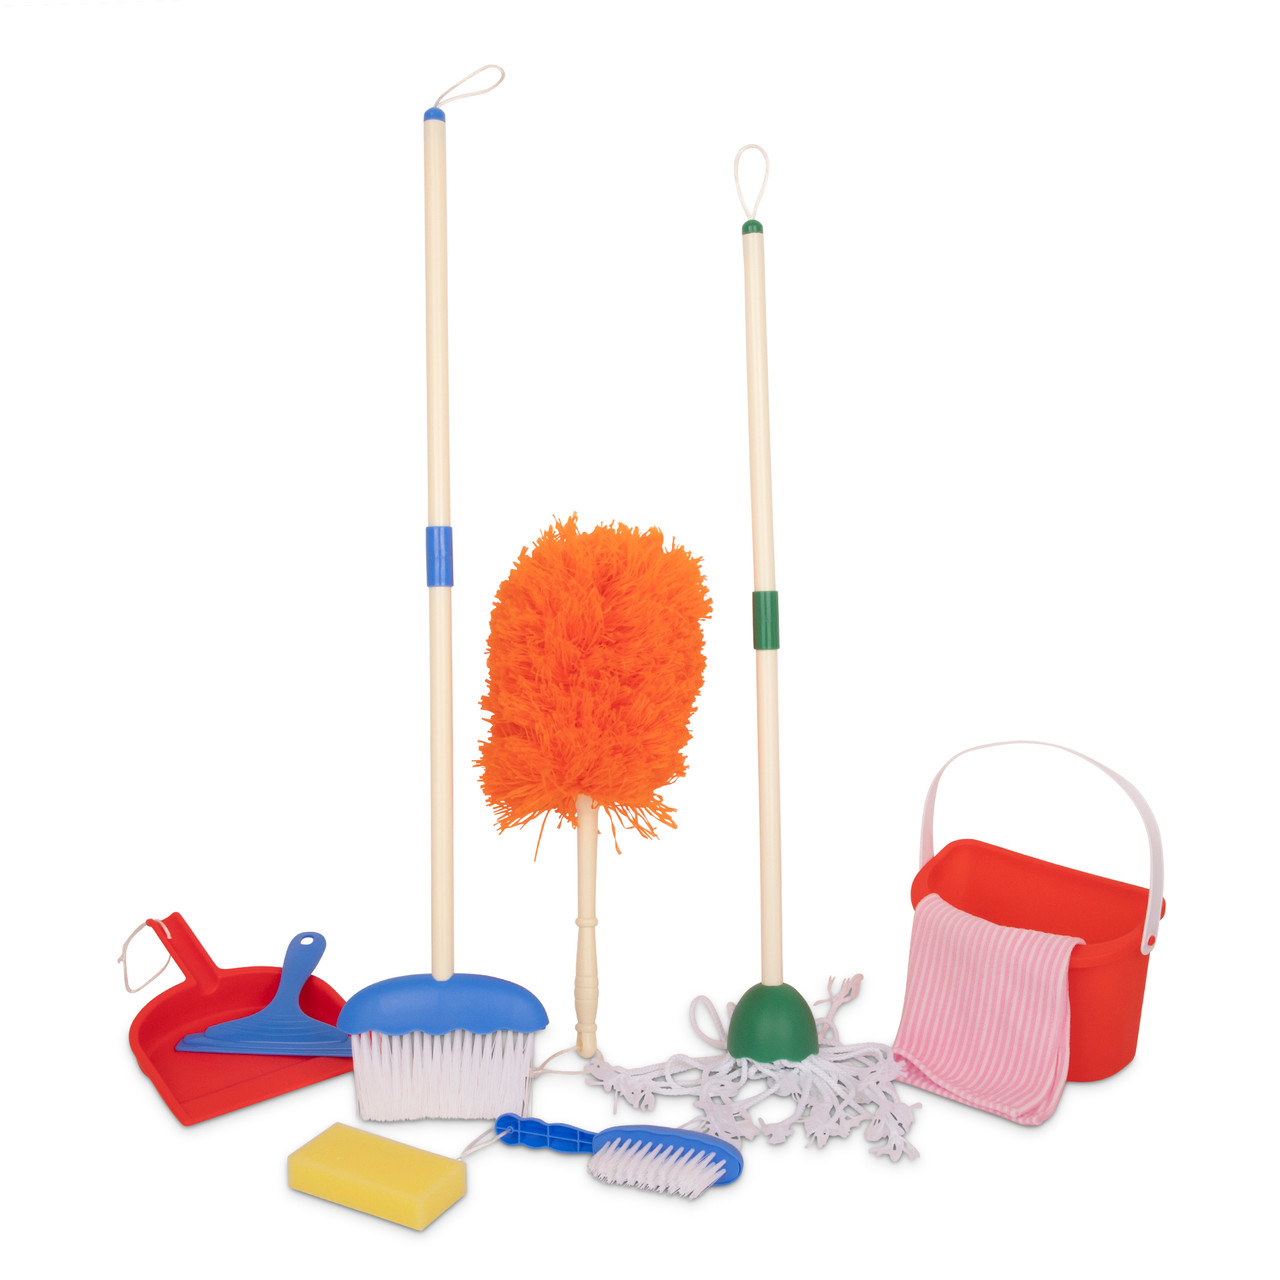 Playkidz Cleaning Caddy Set, 10Pcs Includes Spray, Sponge